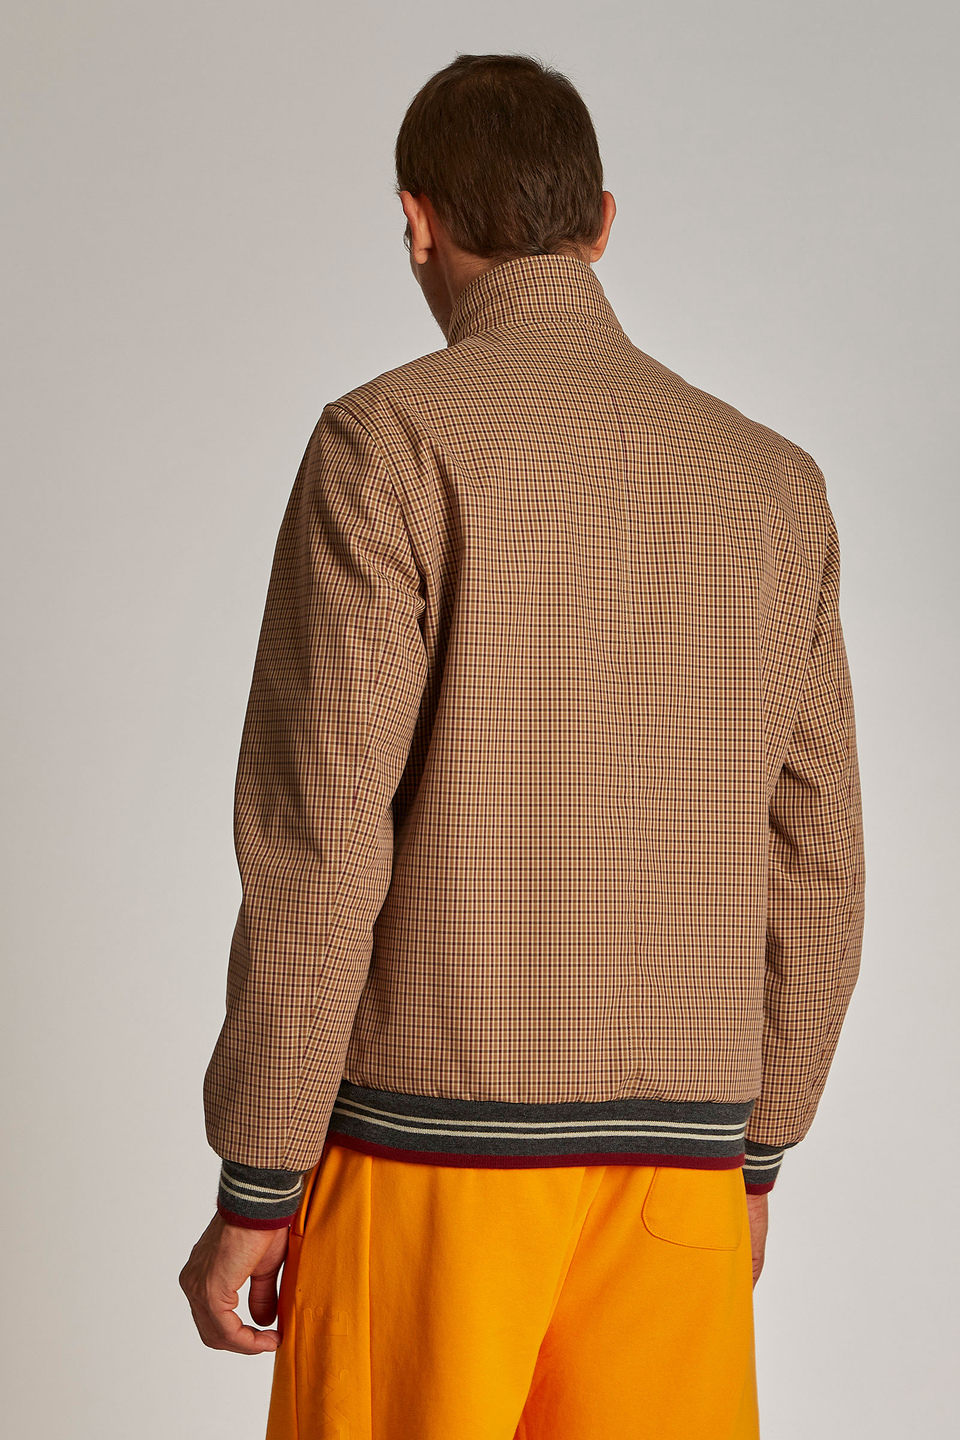 Veste homme en coton, coupe classique et fermeture zippée sur le devant | La Martina - Official Online Shop